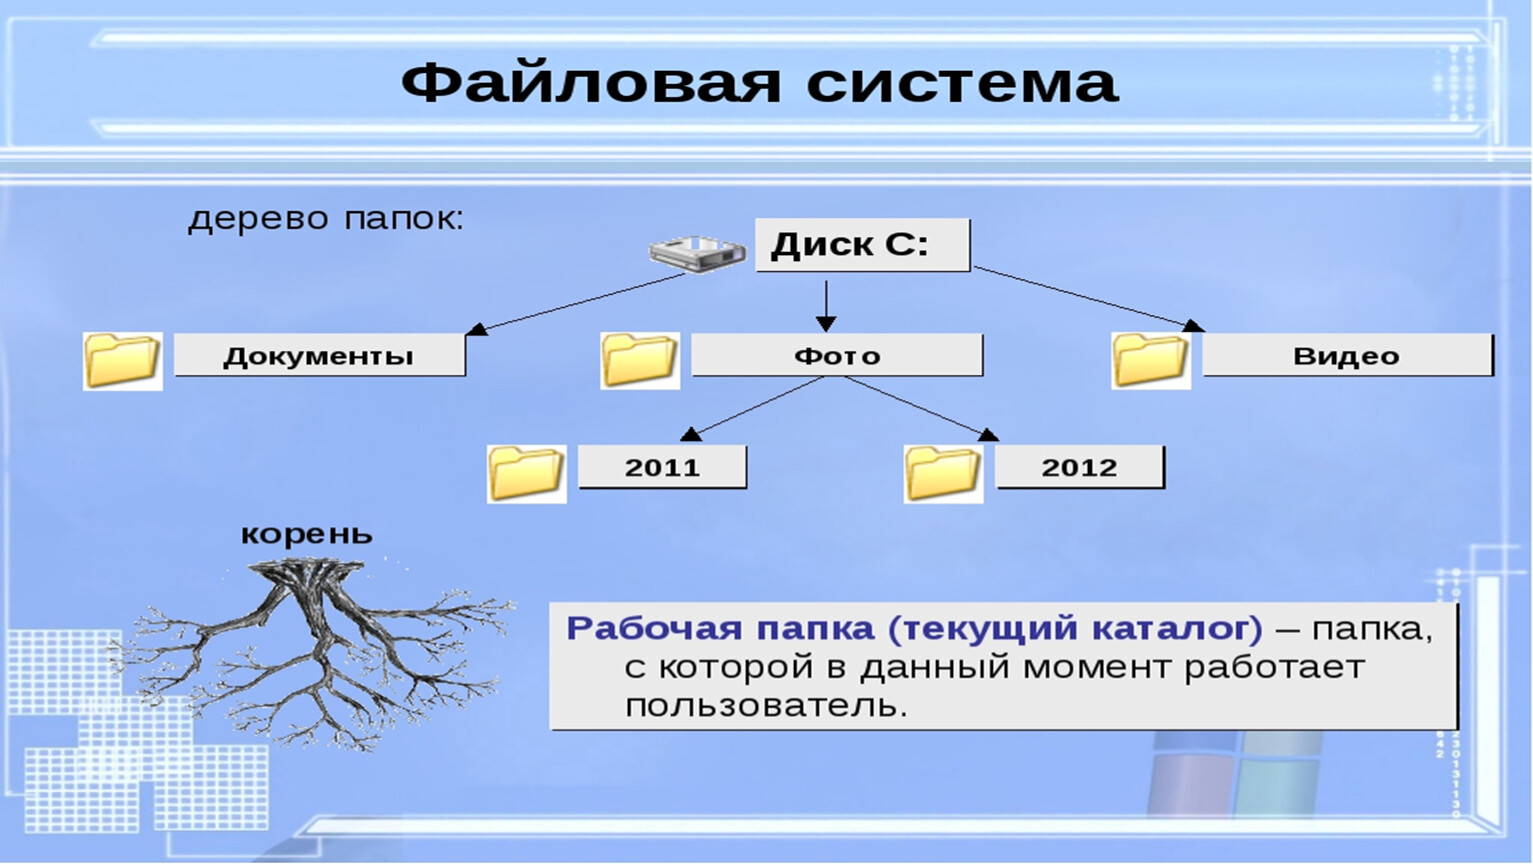 Элемент системы дерево. Иерархическая система папок в операционной системе Windows. Файловая структура ОС. Файловая система ОС Windows. Файловая структура ОС Windows.